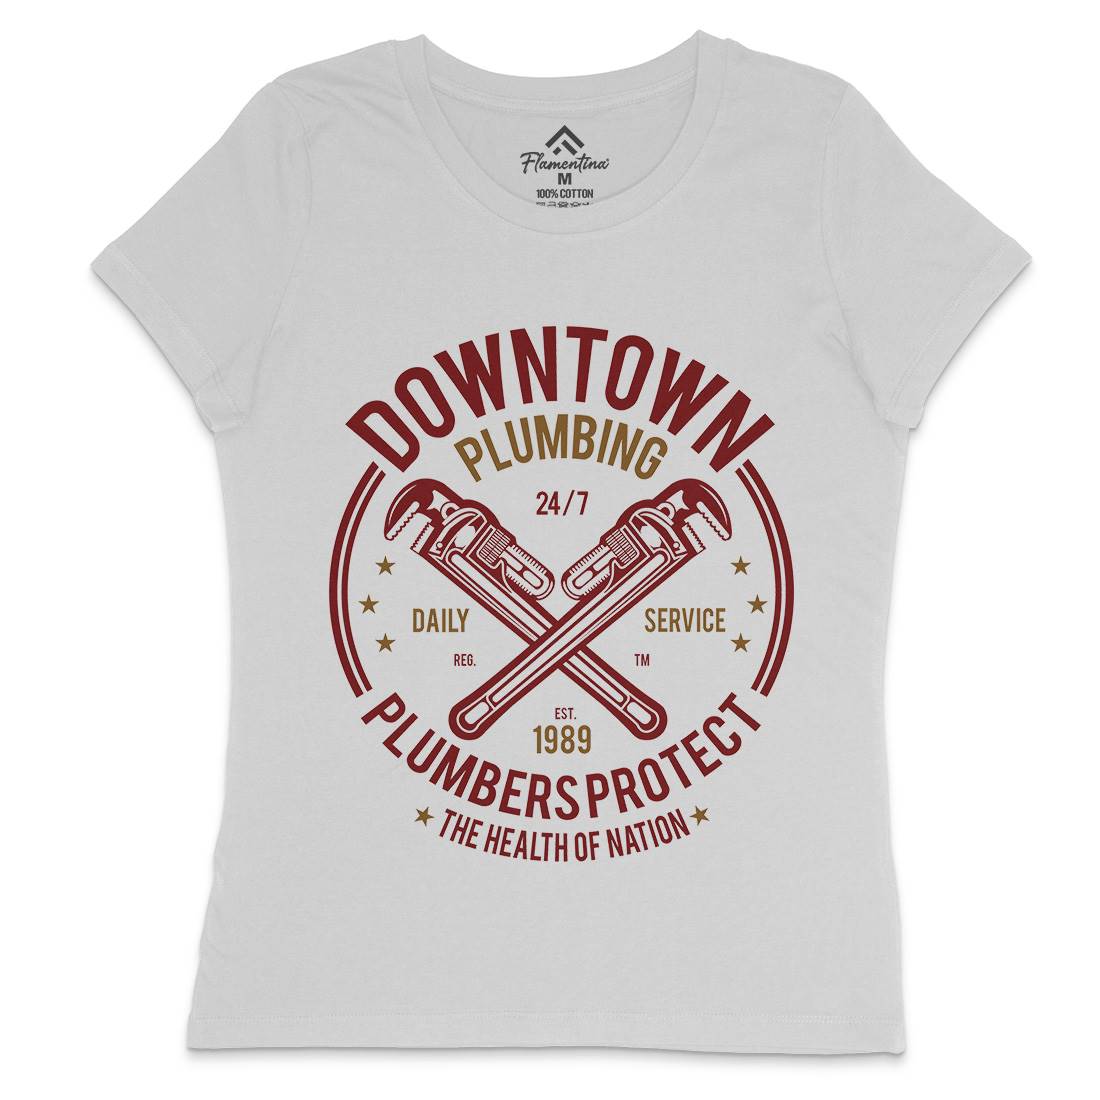 Downtown Plumbing Womens Crew Neck T-Shirt Work A046